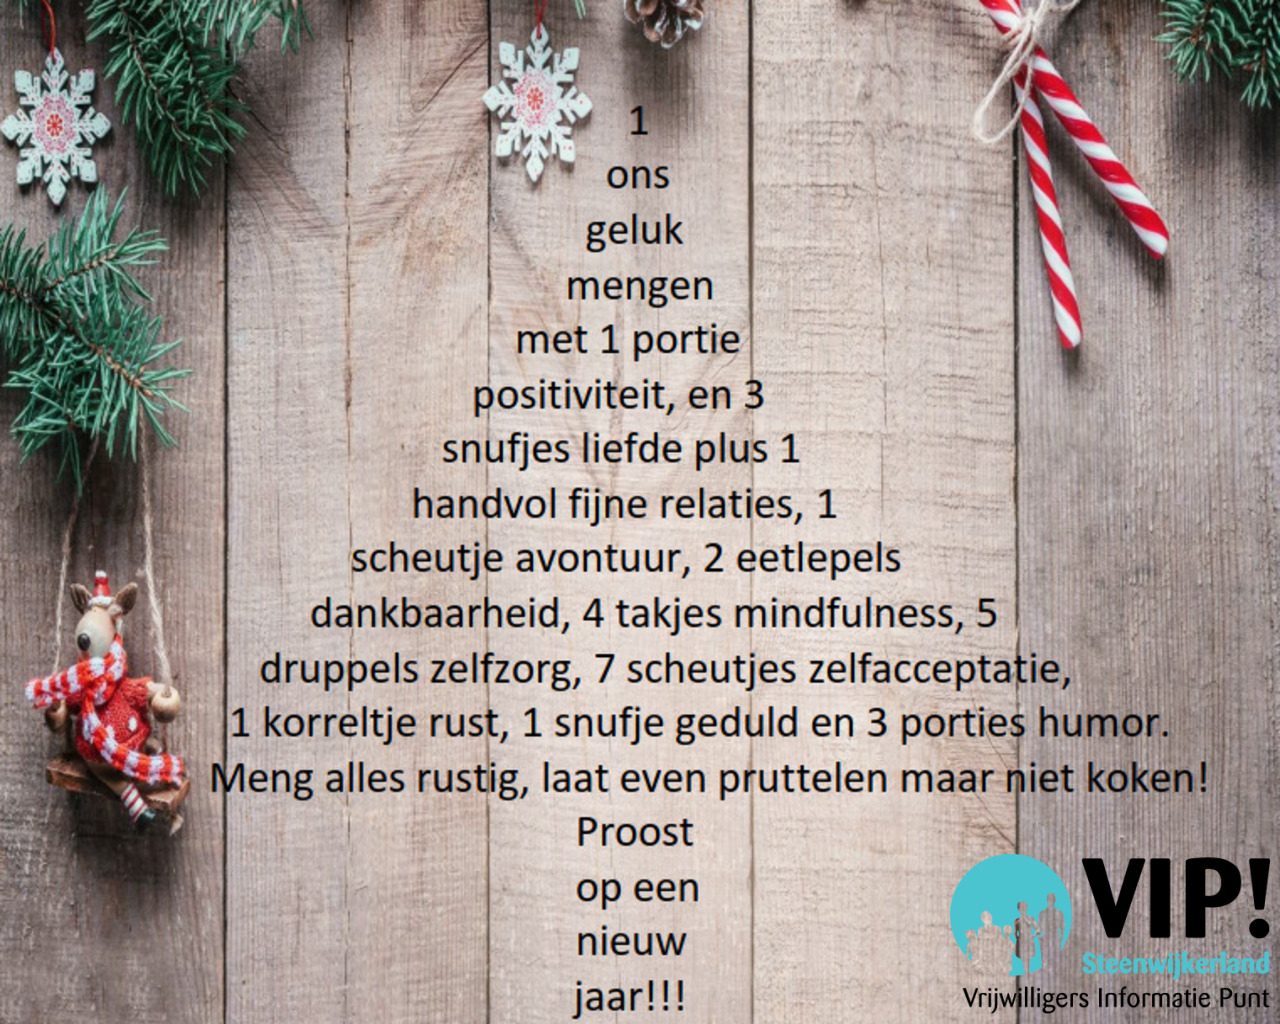 Fijne feestdagen! Het VIP! Steenwijkerland geniet van vakantiedagen tussen Kerst en Oud & Nieuw.